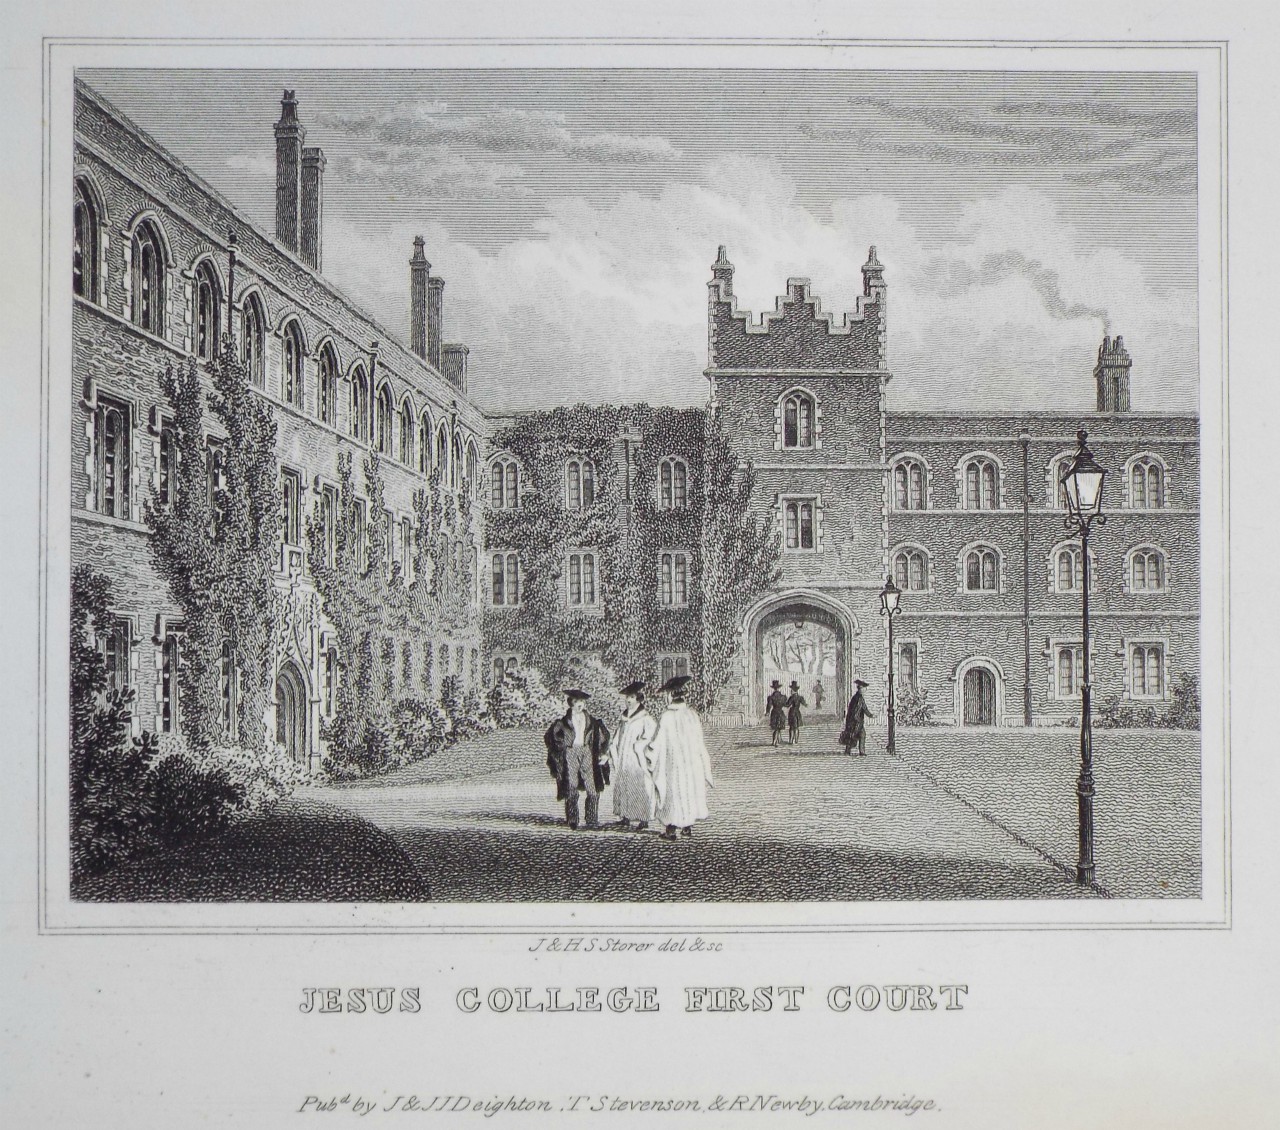 Print - Jesus College First Court - Storer